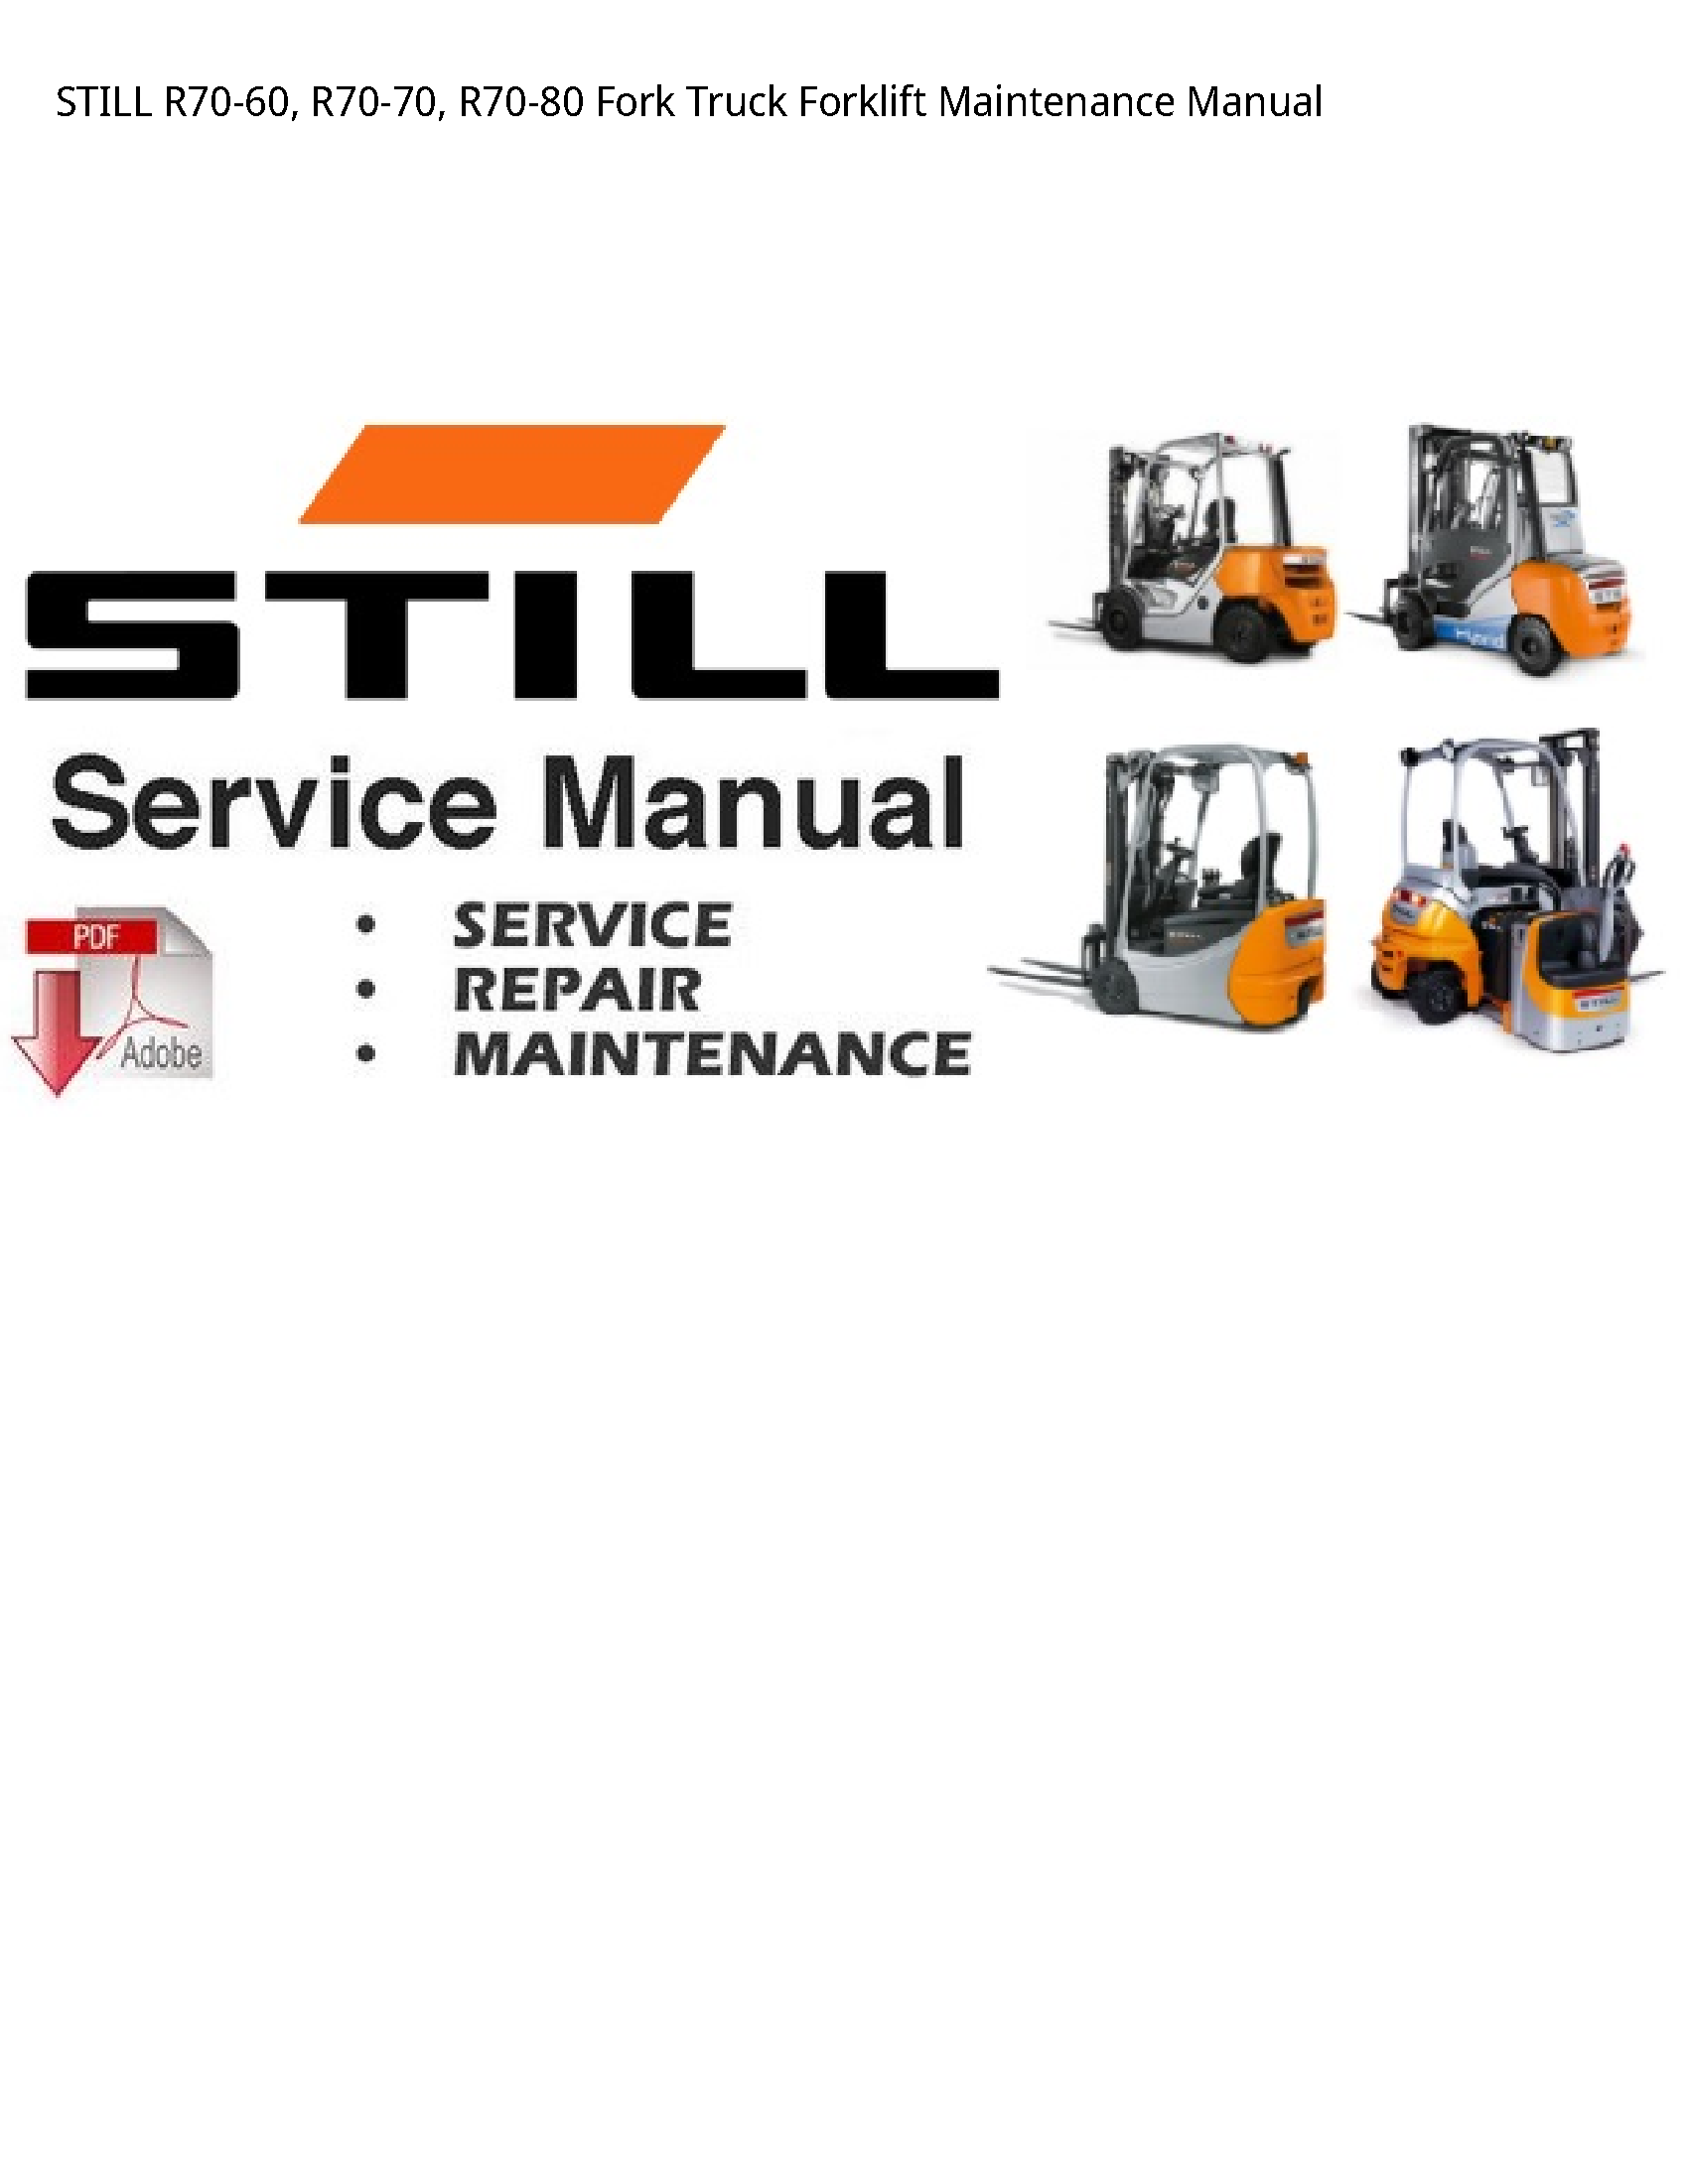 Still R70-60 Fork Truck Forklift Maintenance manual